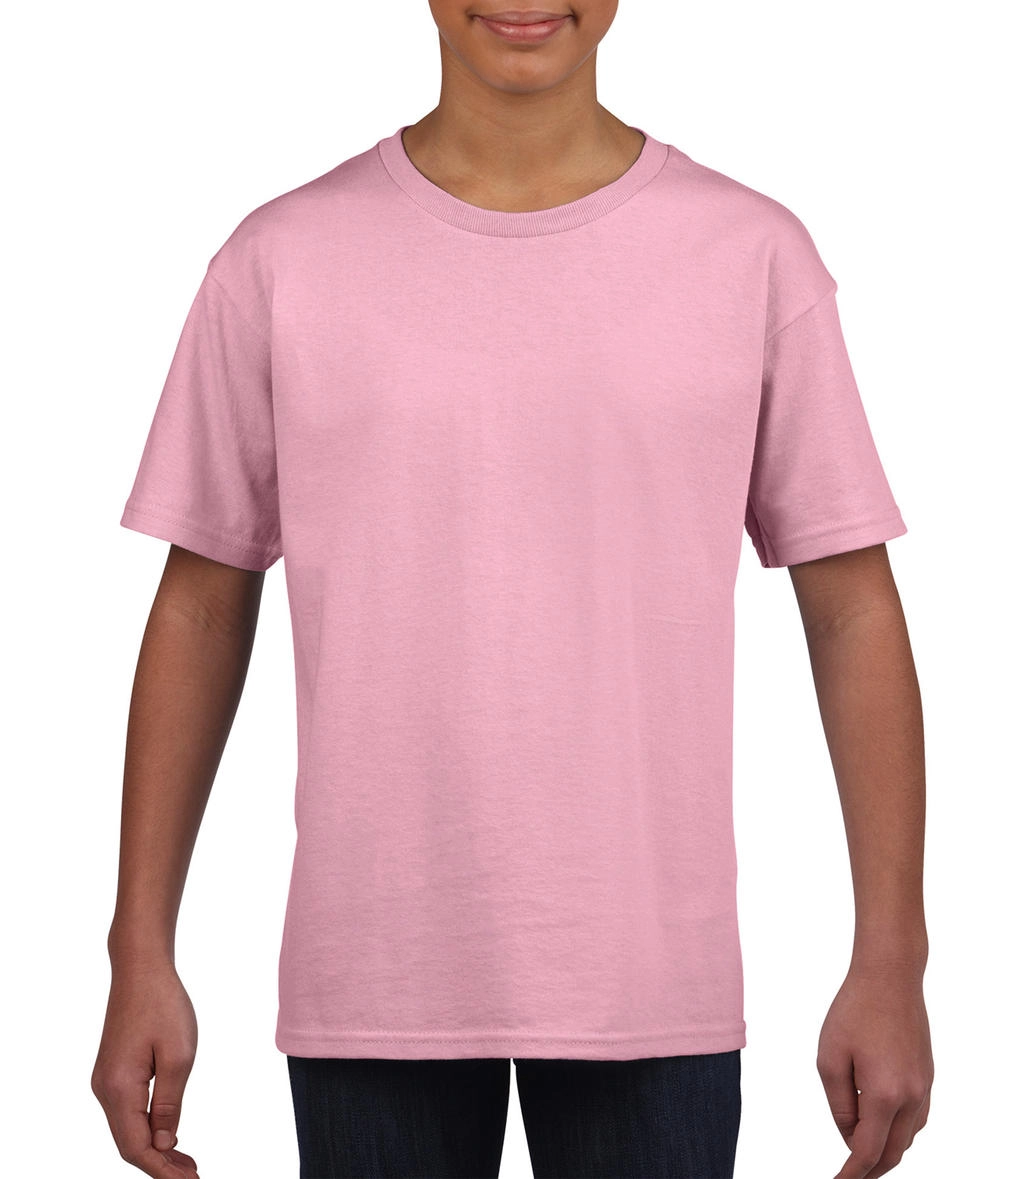 Softstyle® Youth T-Shirt zum Besticken und Bedrucken in der Farbe Light Pink mit Ihren Logo, Schriftzug oder Motiv.